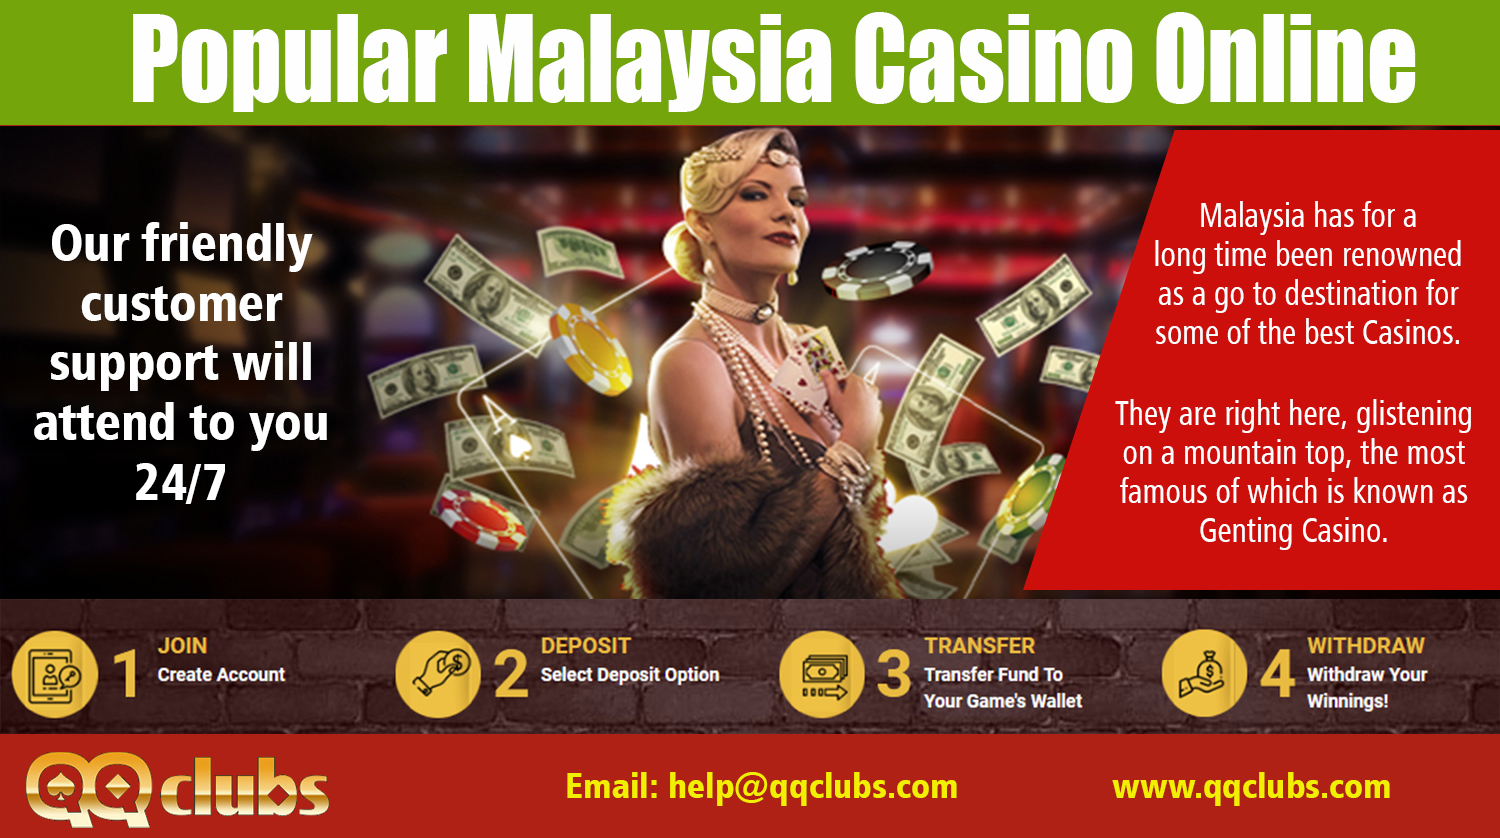 Online casino malaysia forum 2019 phpbb игровые автоматы на android скачать